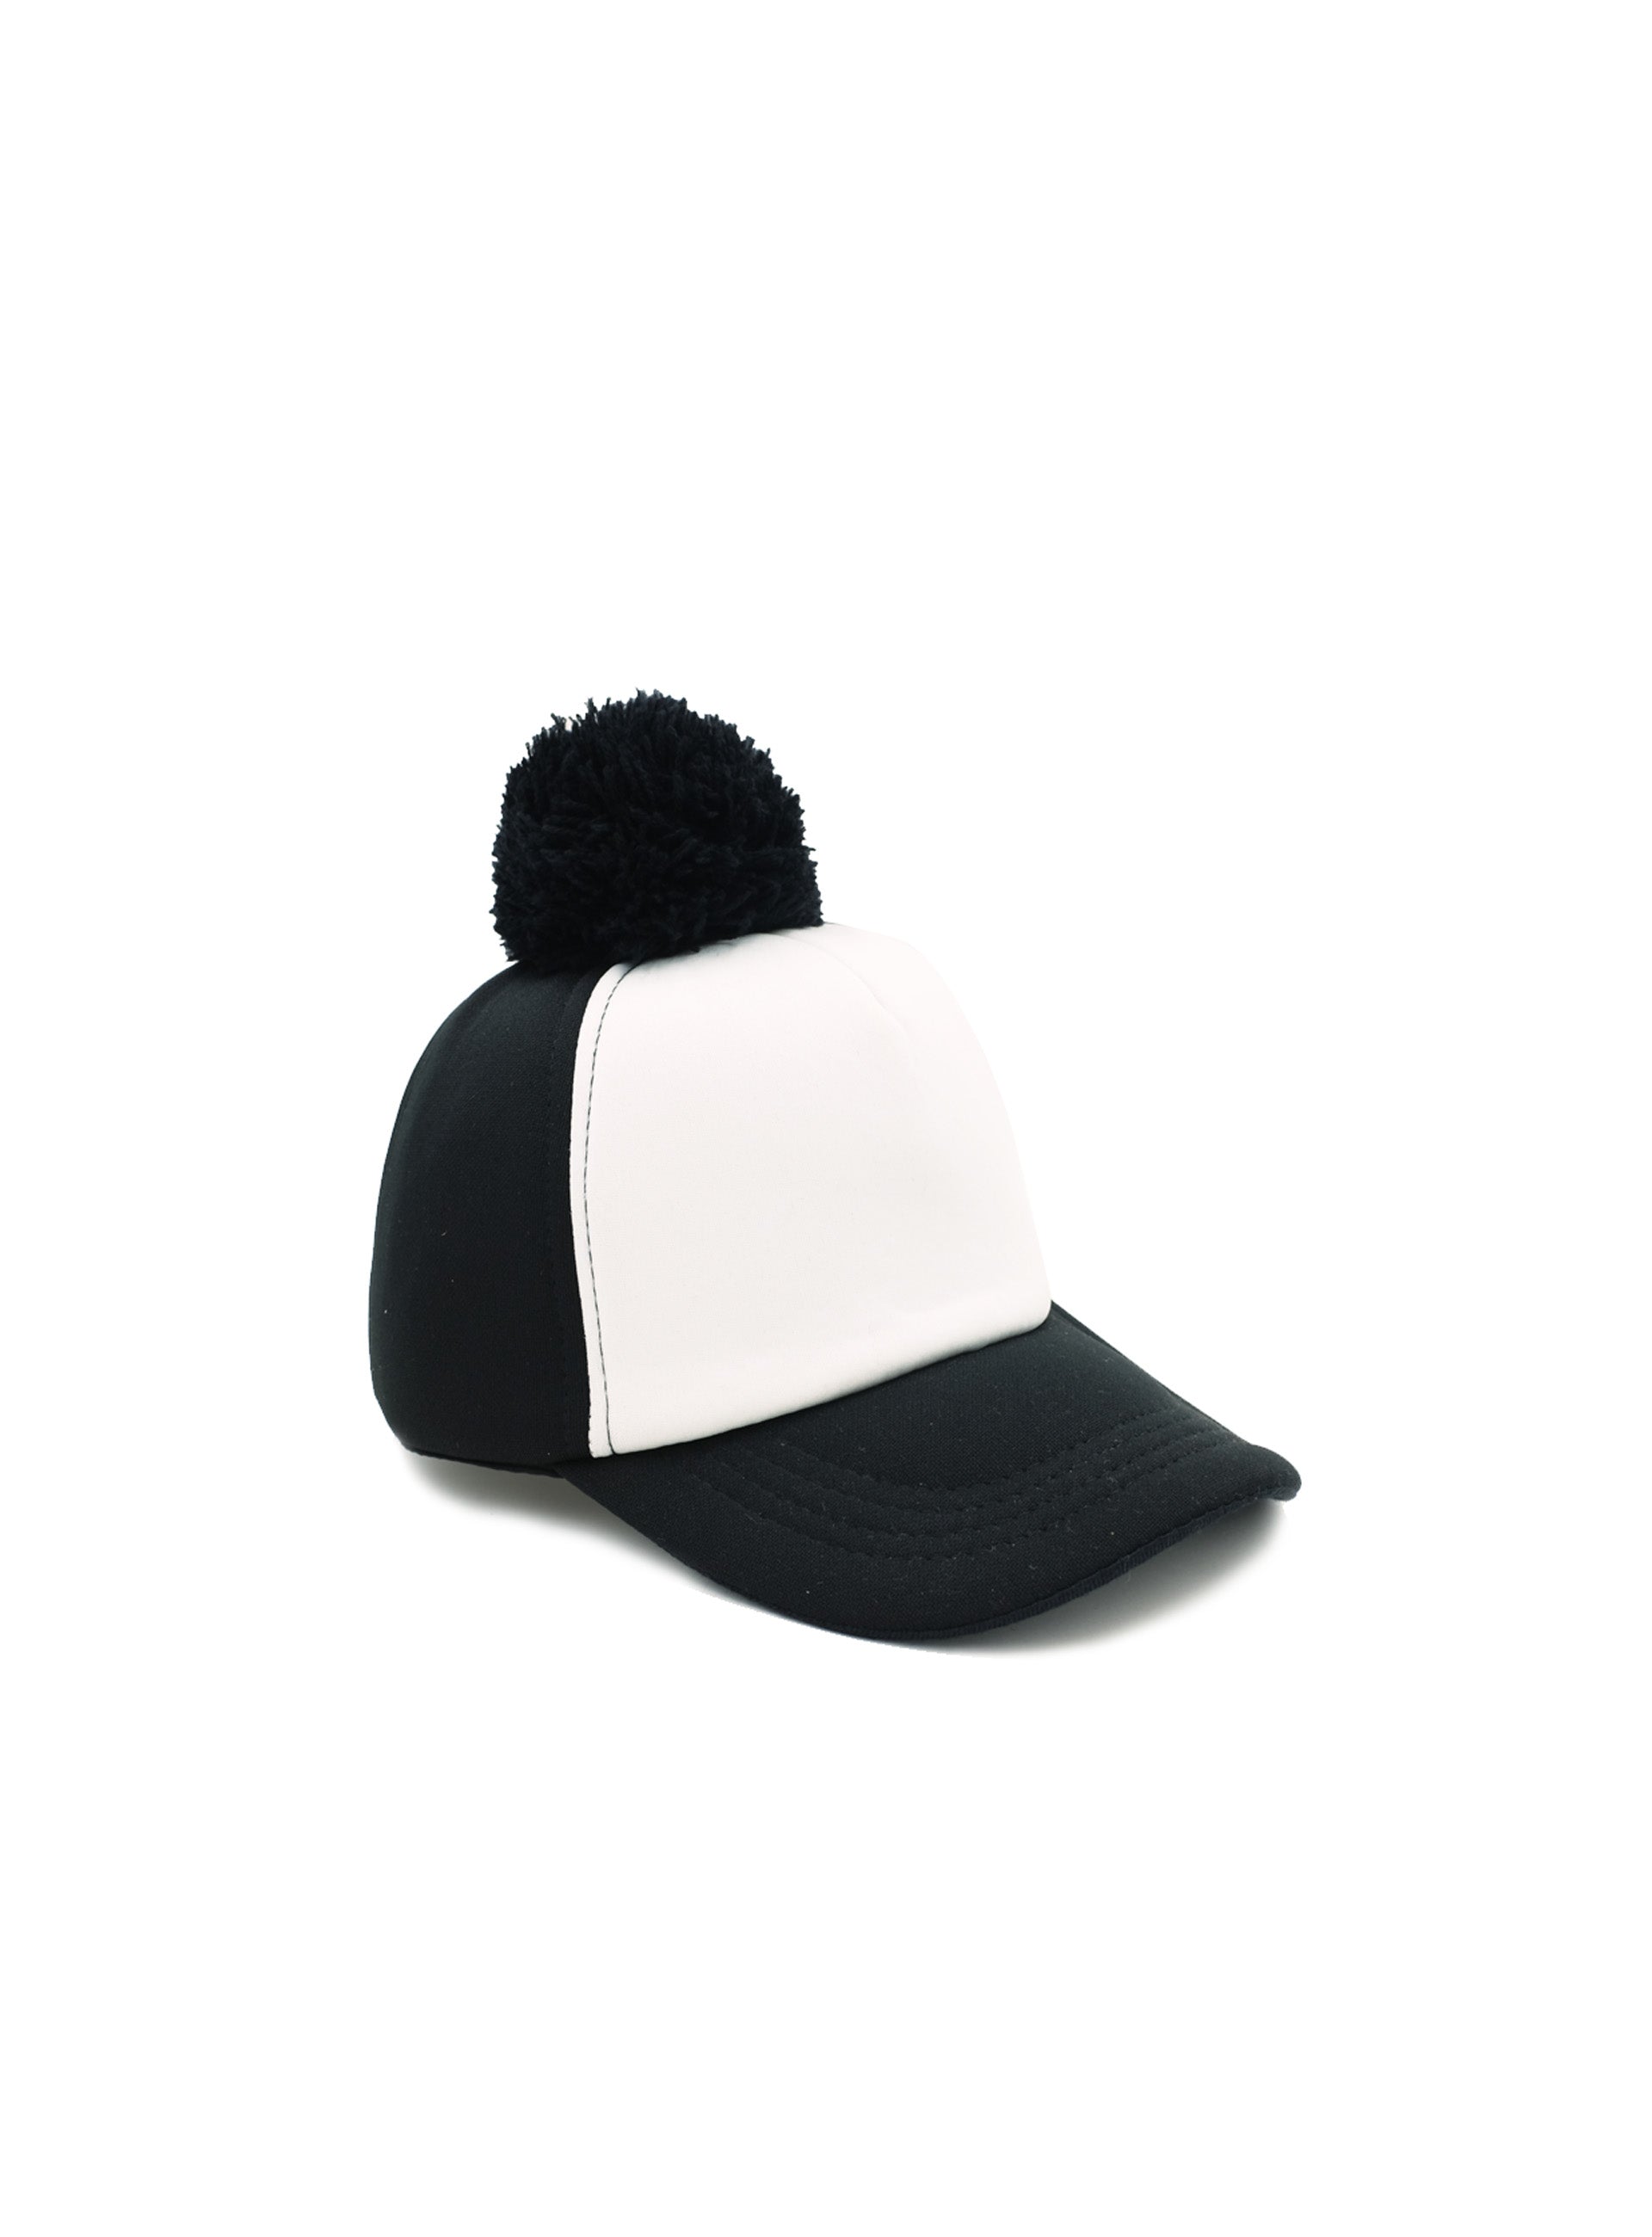 monochrome cap with black pom